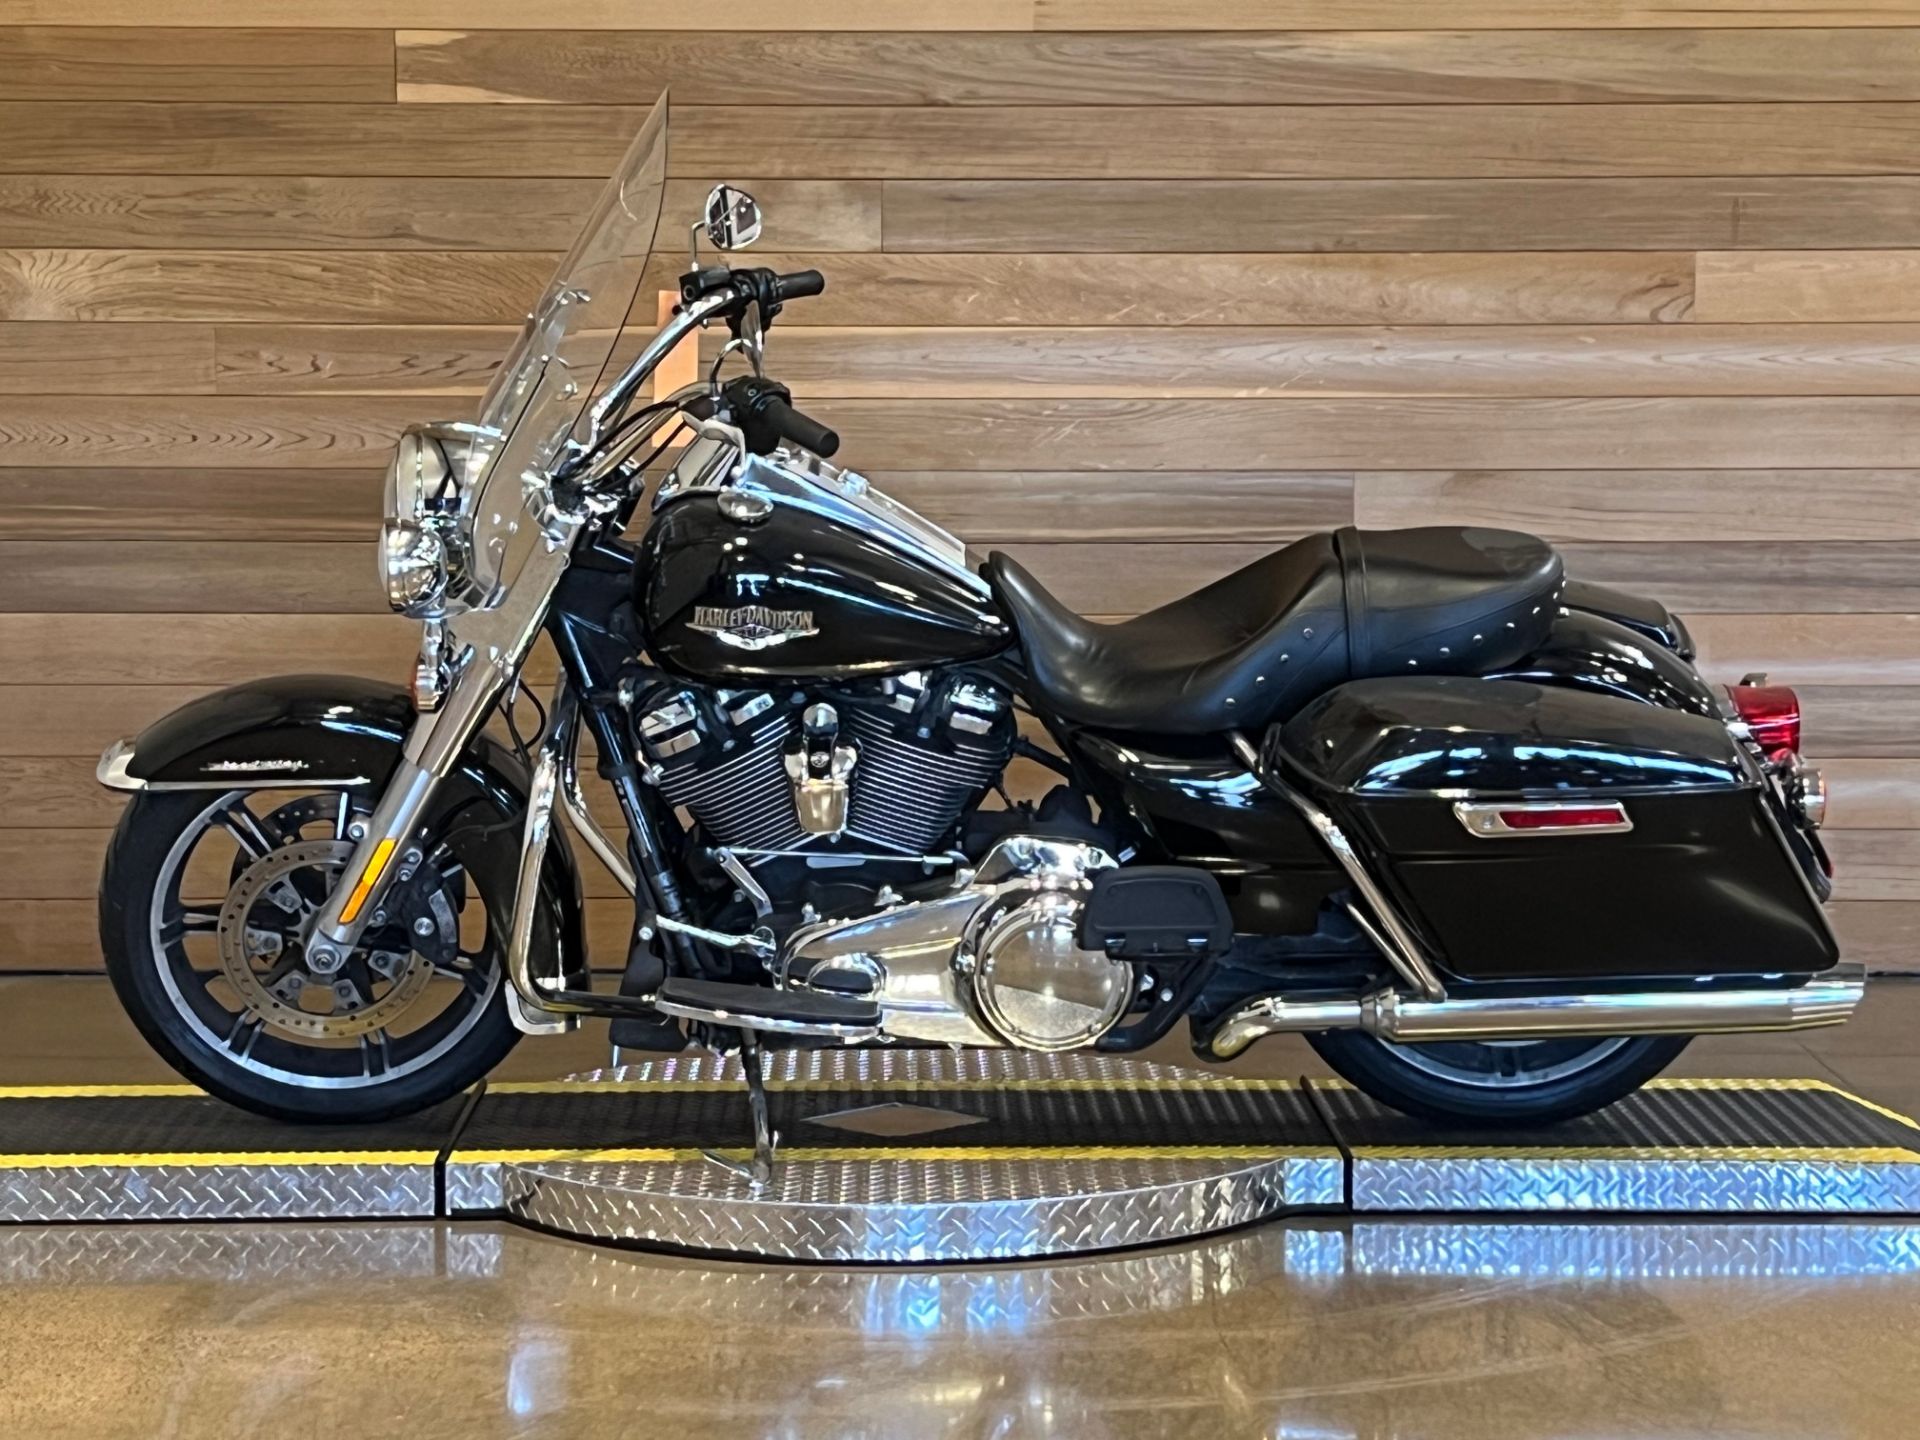 2021 Harley-Davidson Road King® in Salem, Oregon - Photo 5